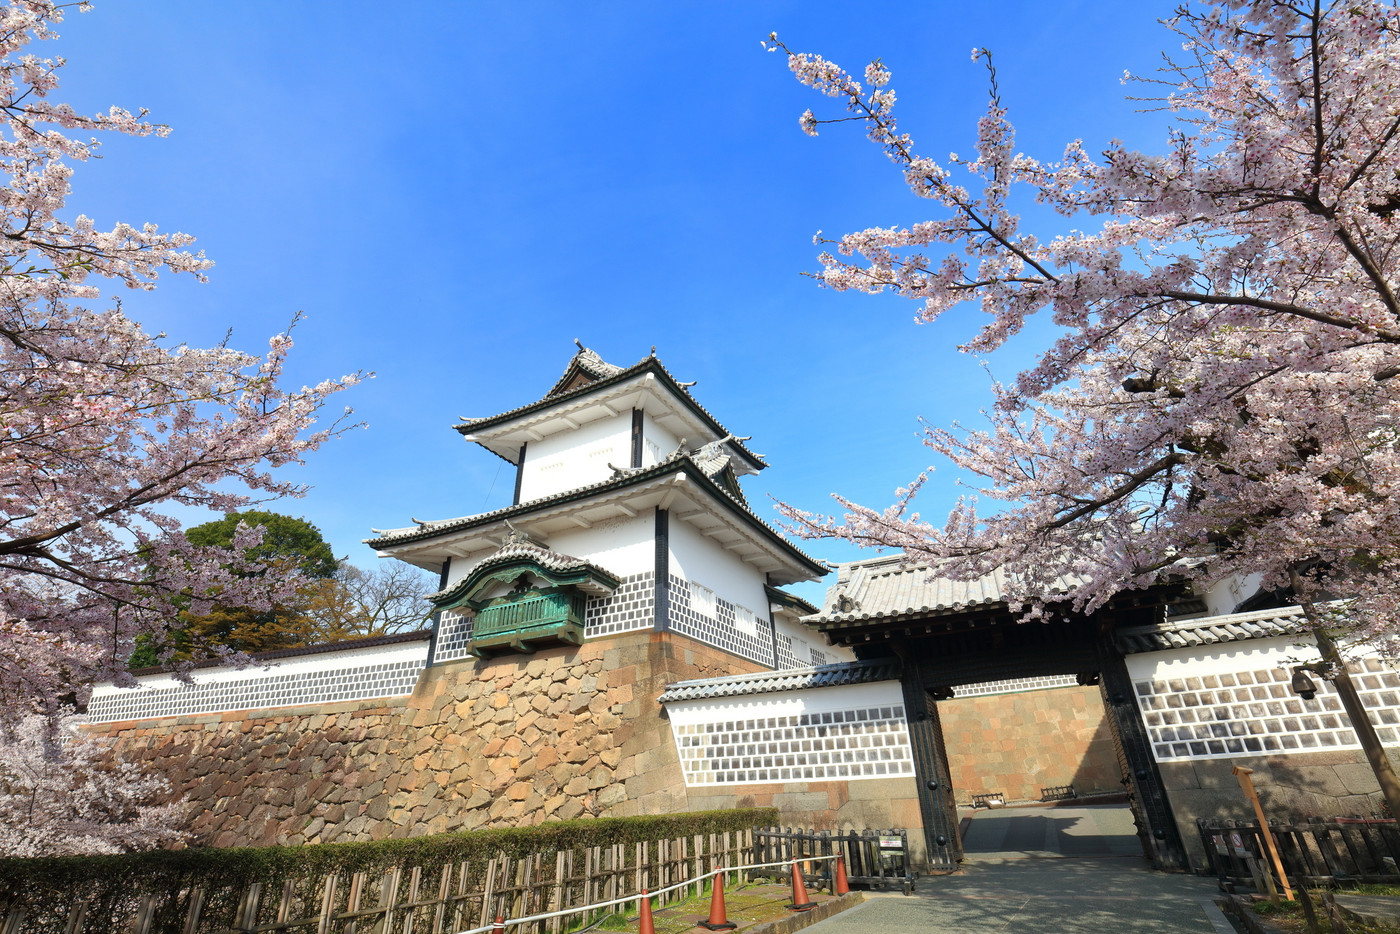 【石川県】晴天の金沢城 石川門と満開の桜